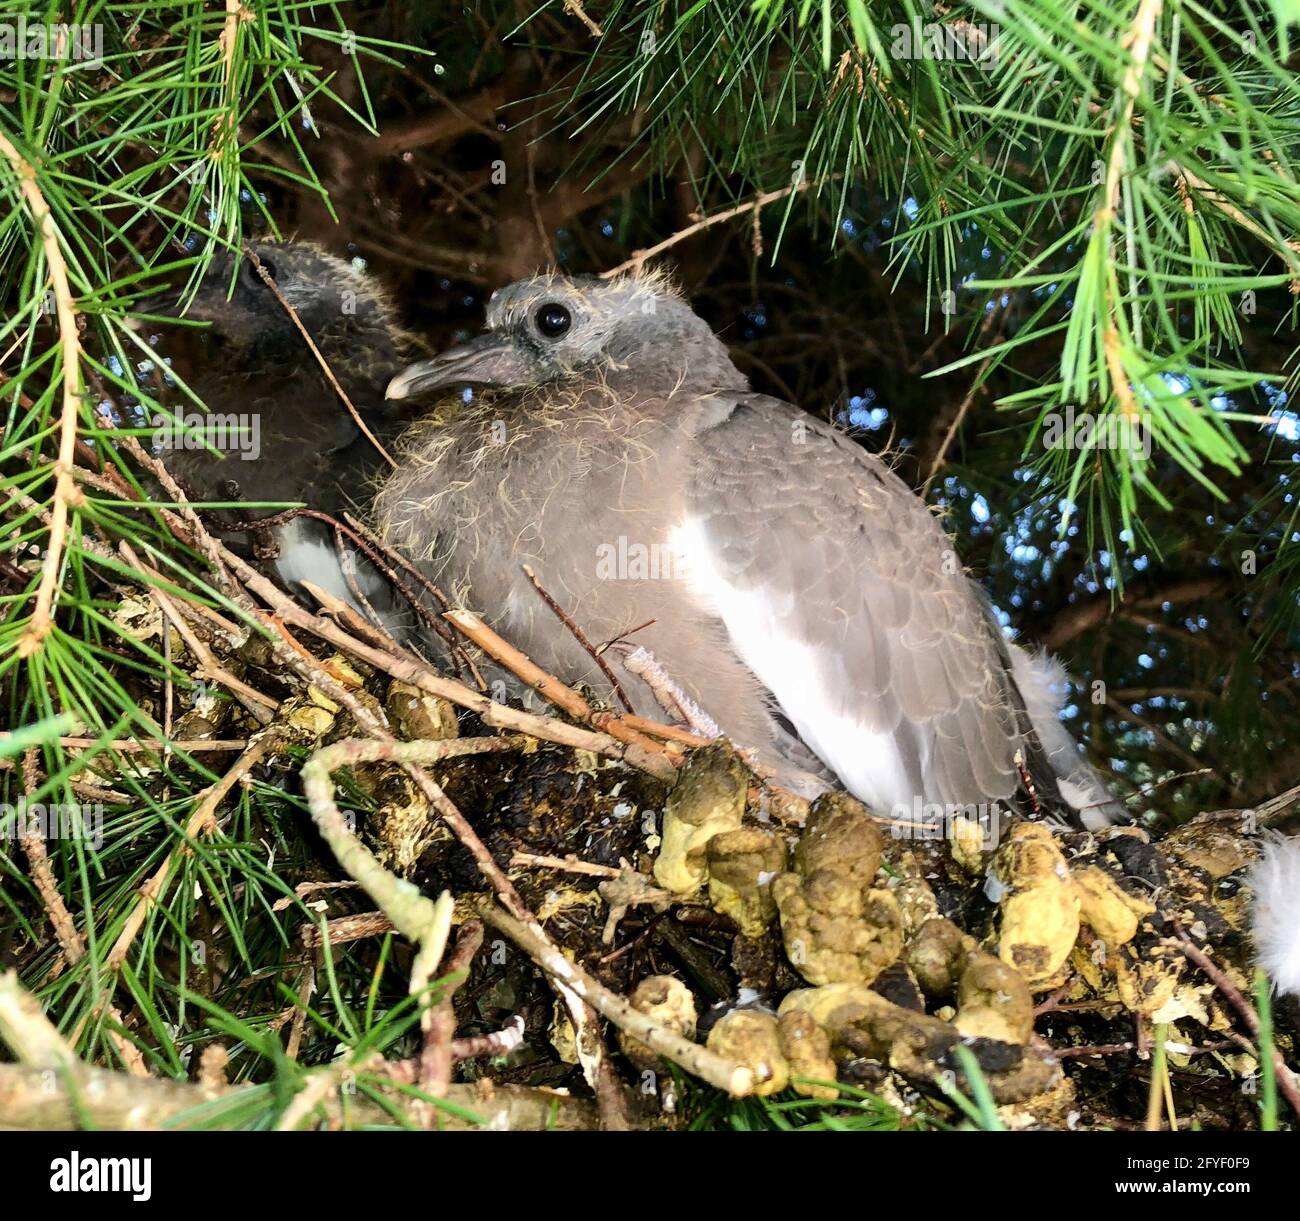 Due piccioni di legno giovani in un nido - sono chiamati squabs a questa età e si nutrono interamente con una dieta liquida che i genitori rigurgitano. Foto Stock